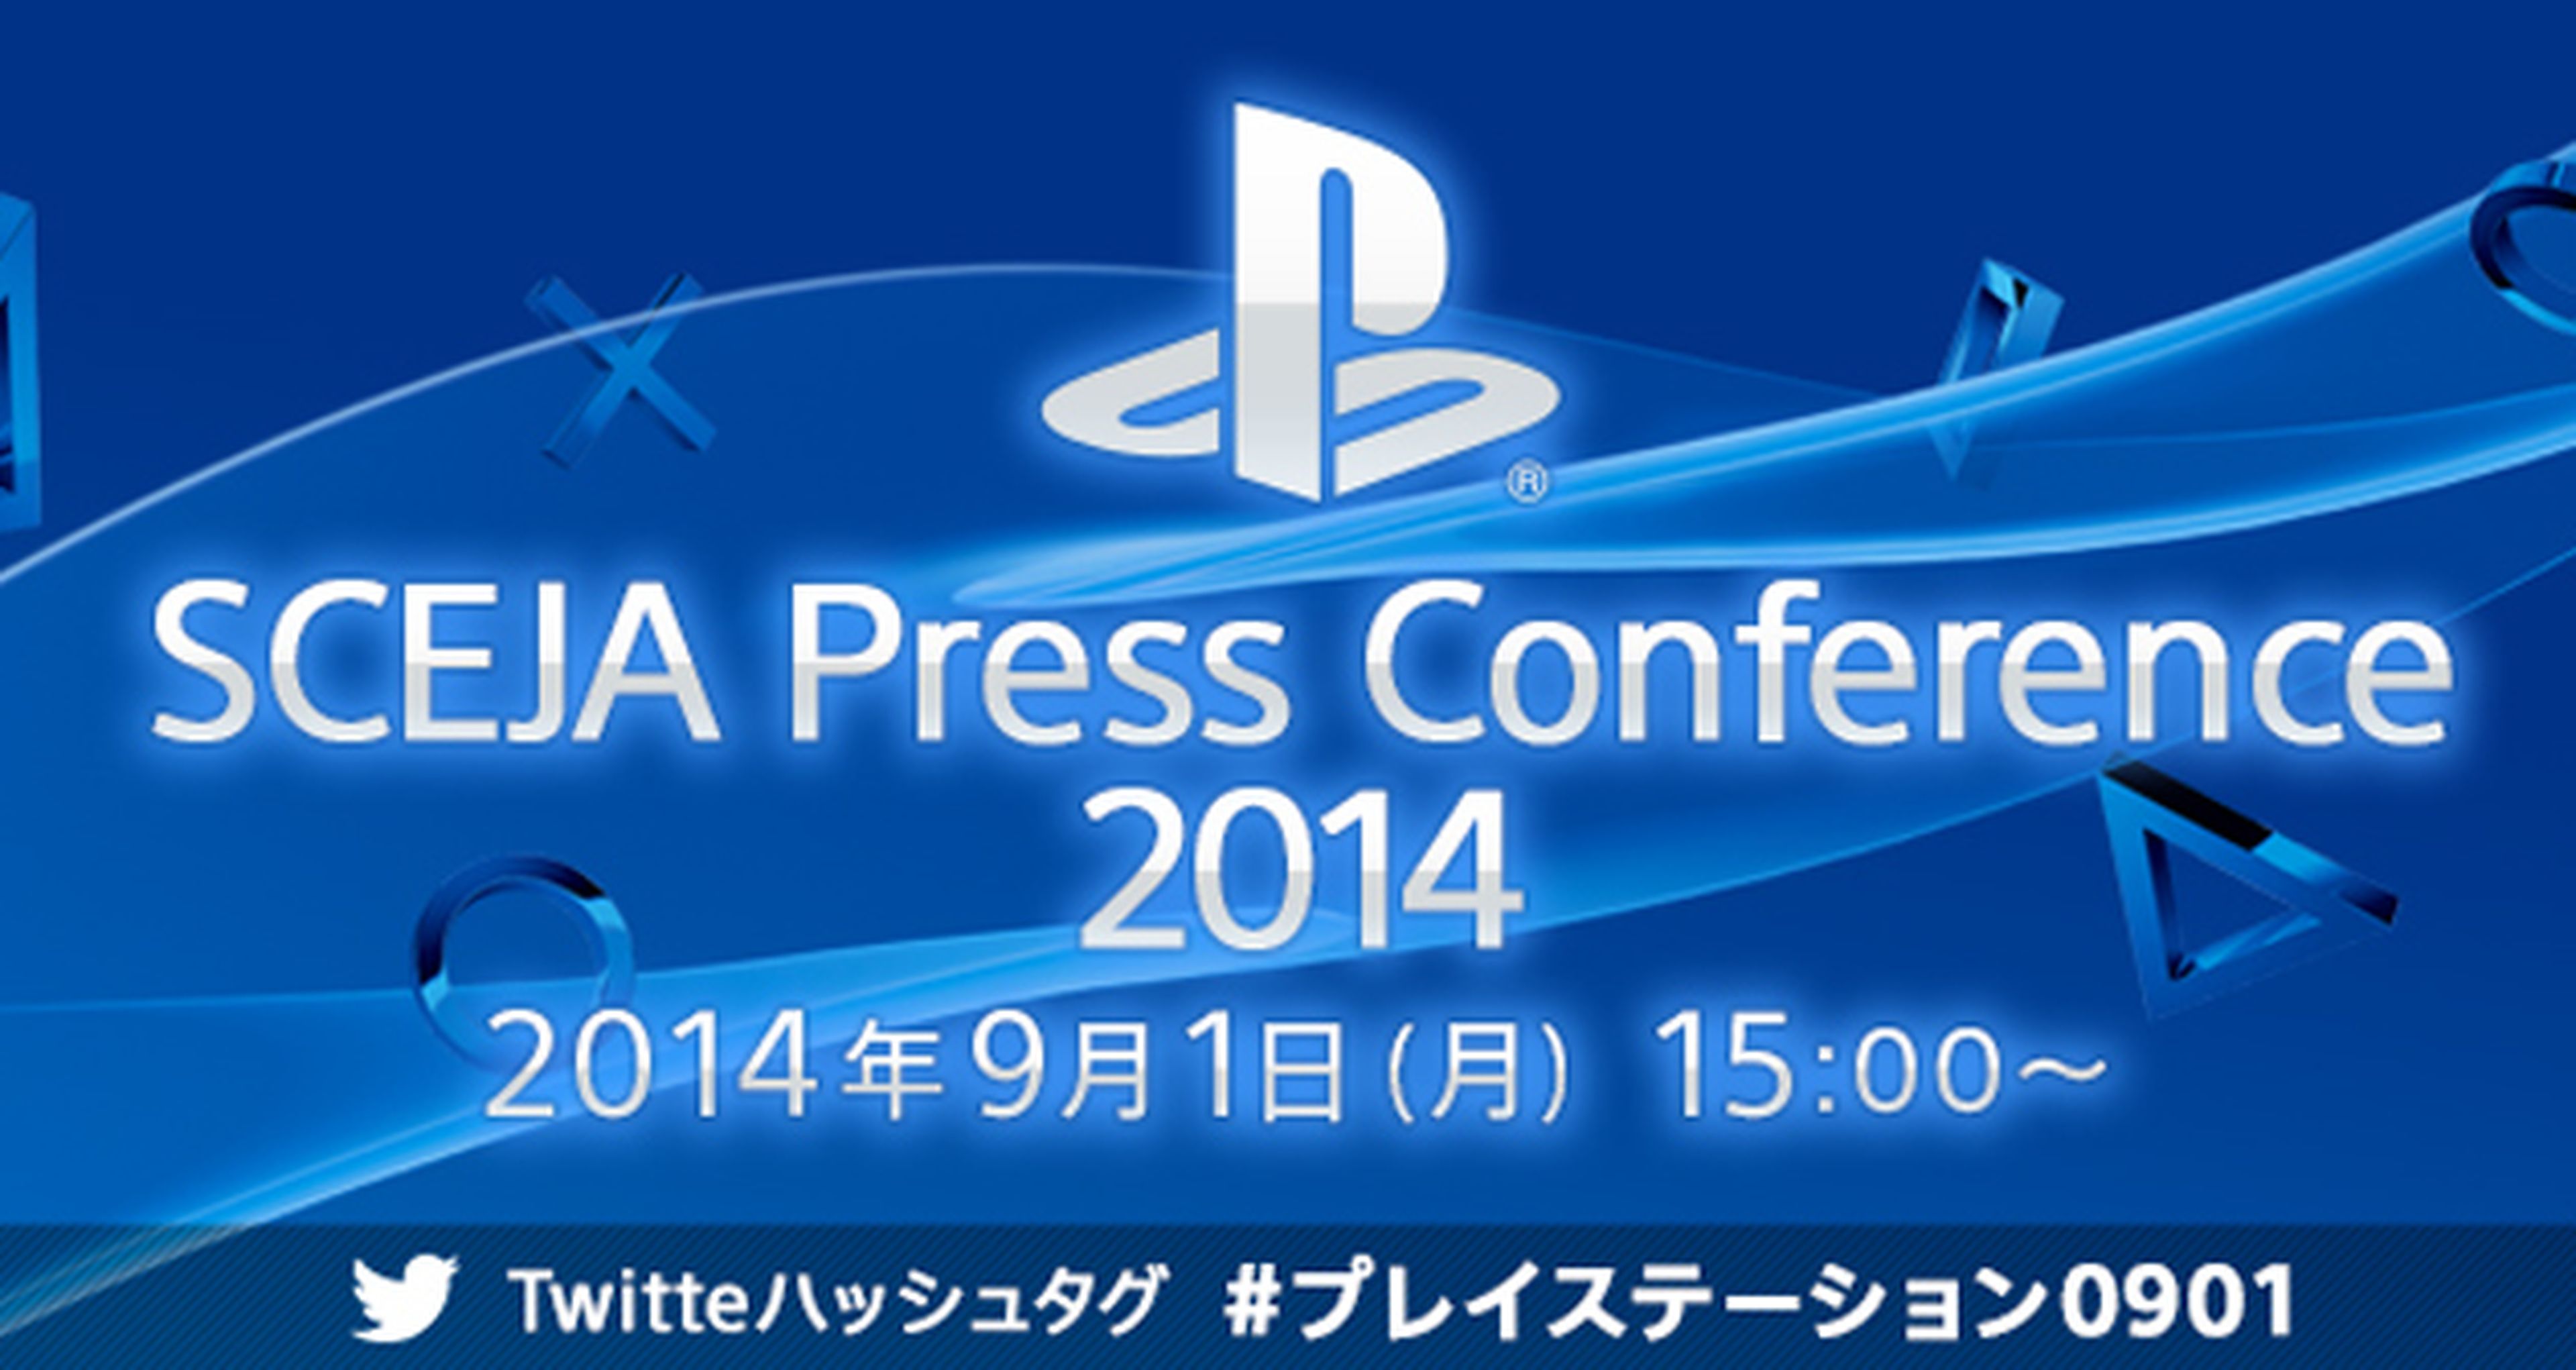 La conferencia de Sony previa al Tokyo Game Show 2014 ya tiene fecha